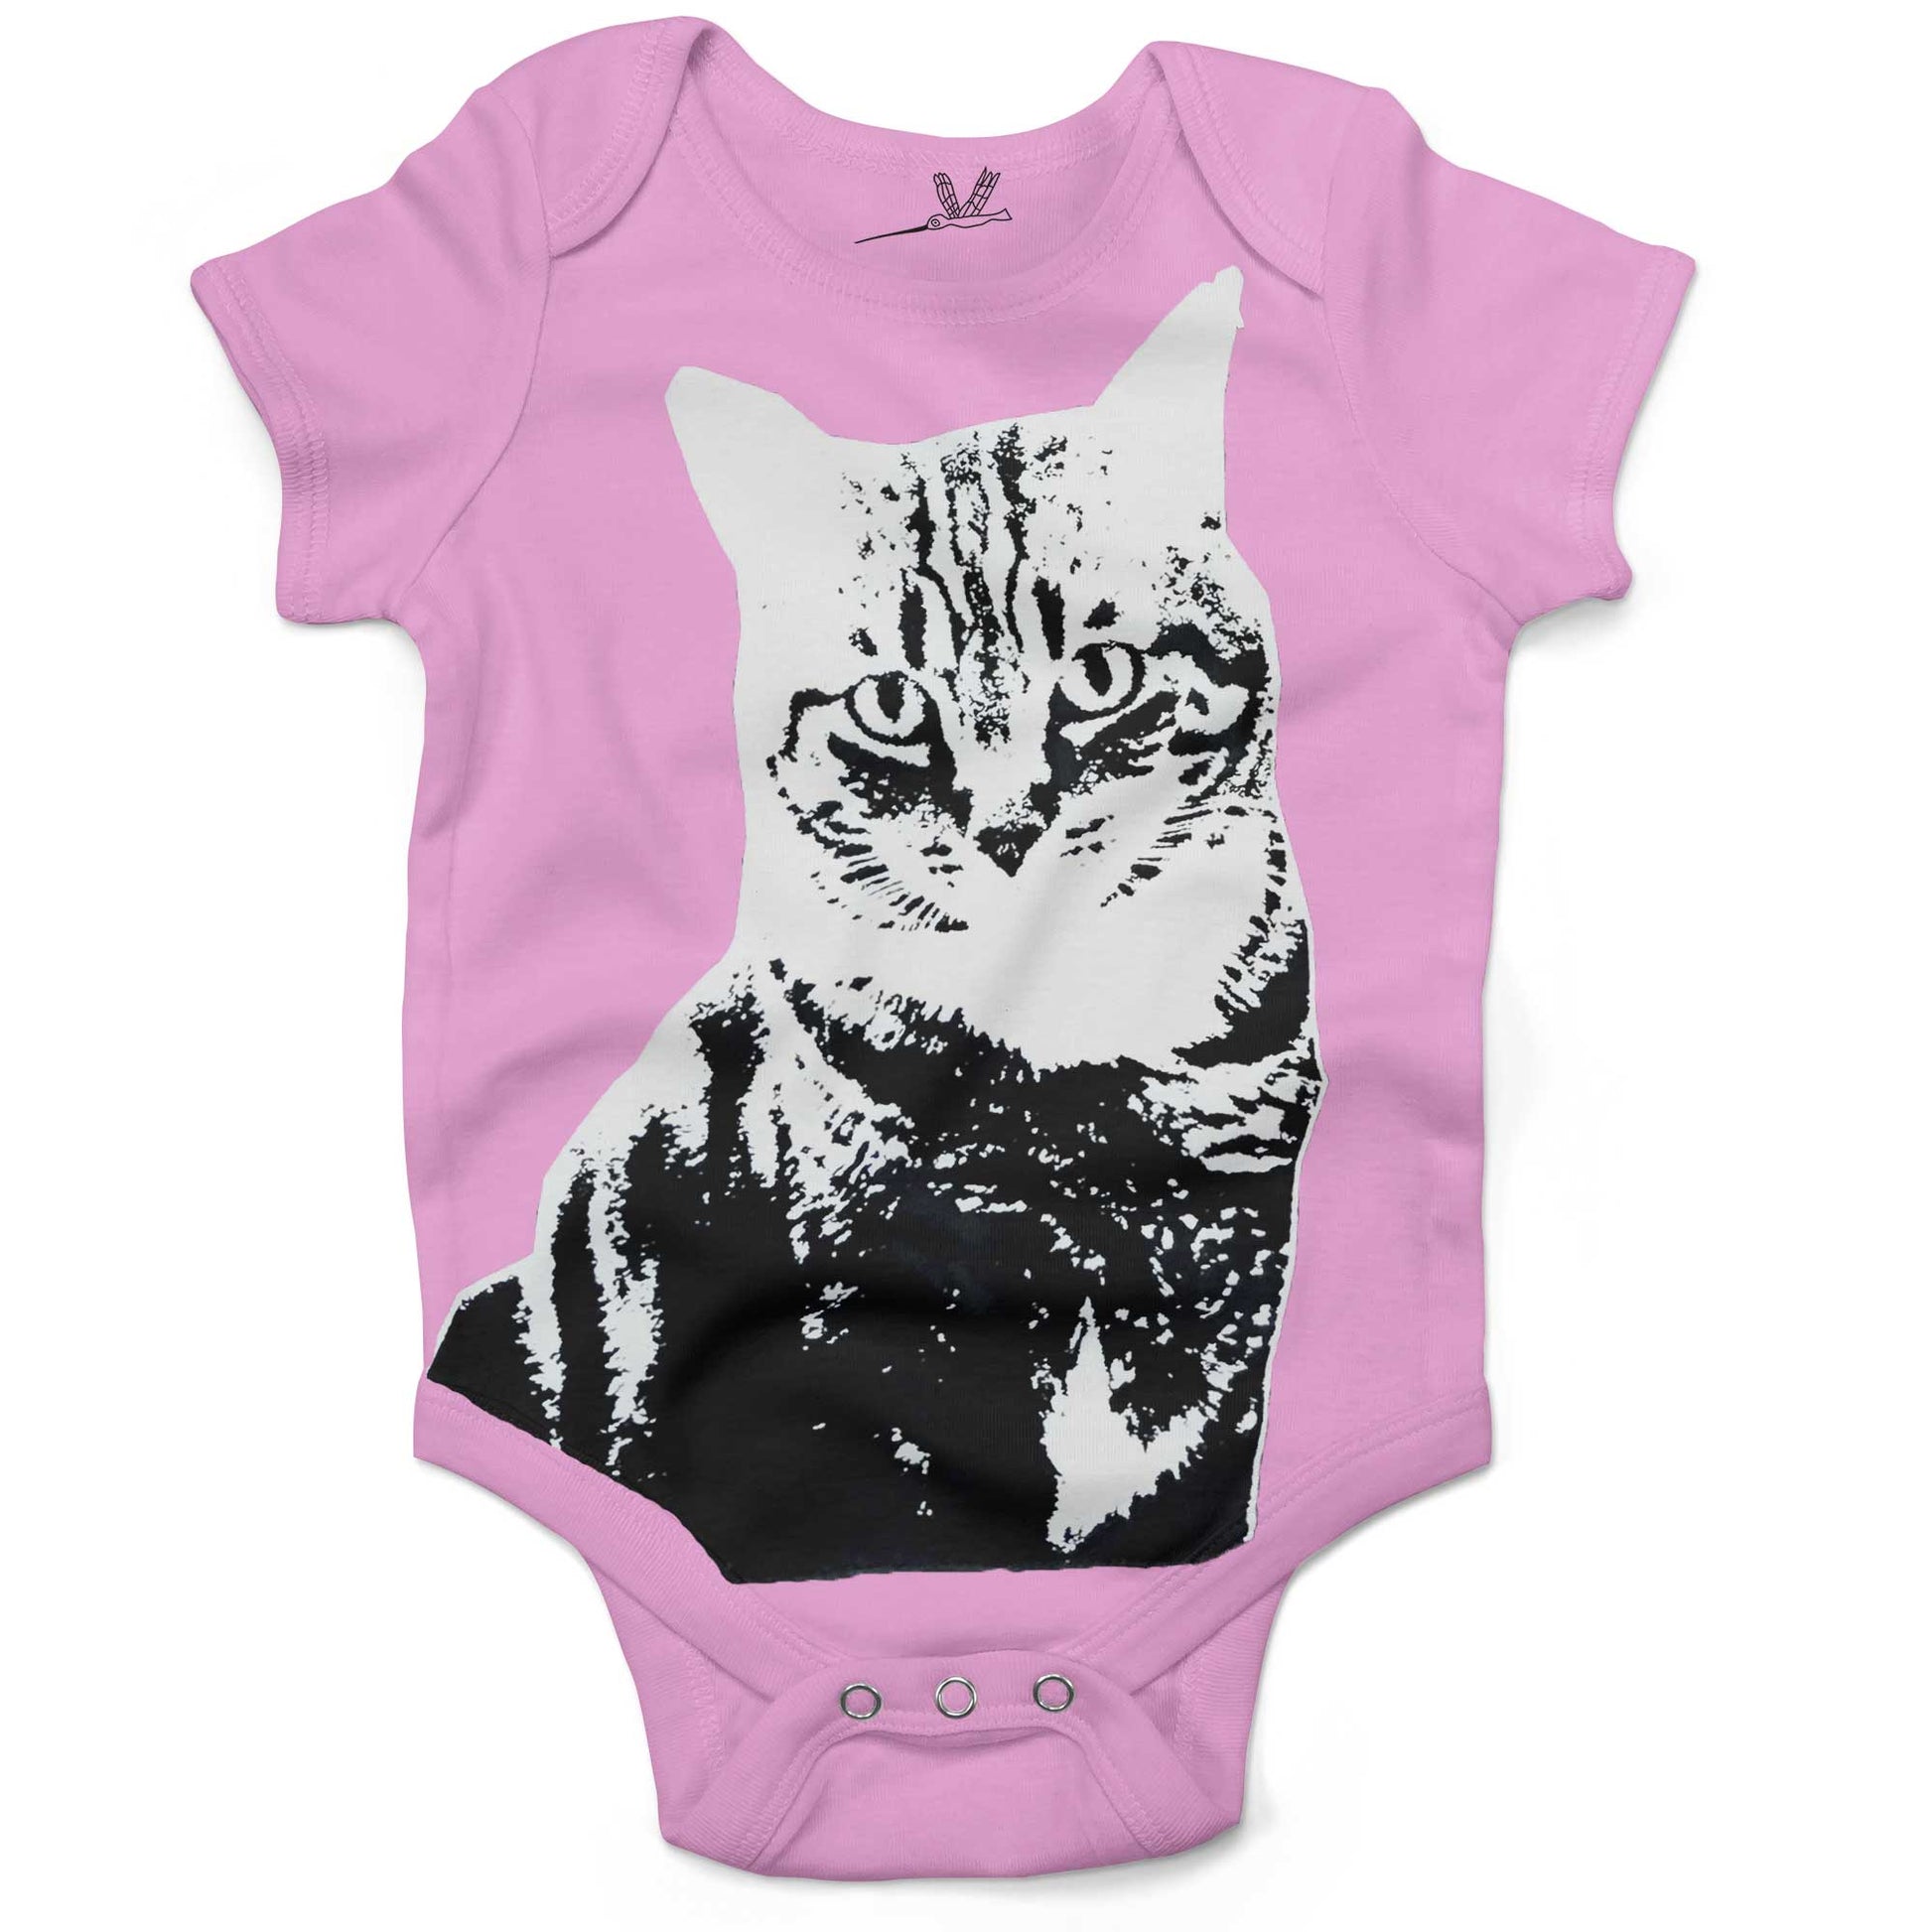 Black & White Cat Infant Bodysuit or Raglan Baby Tee-Organic Pink-3-6 months